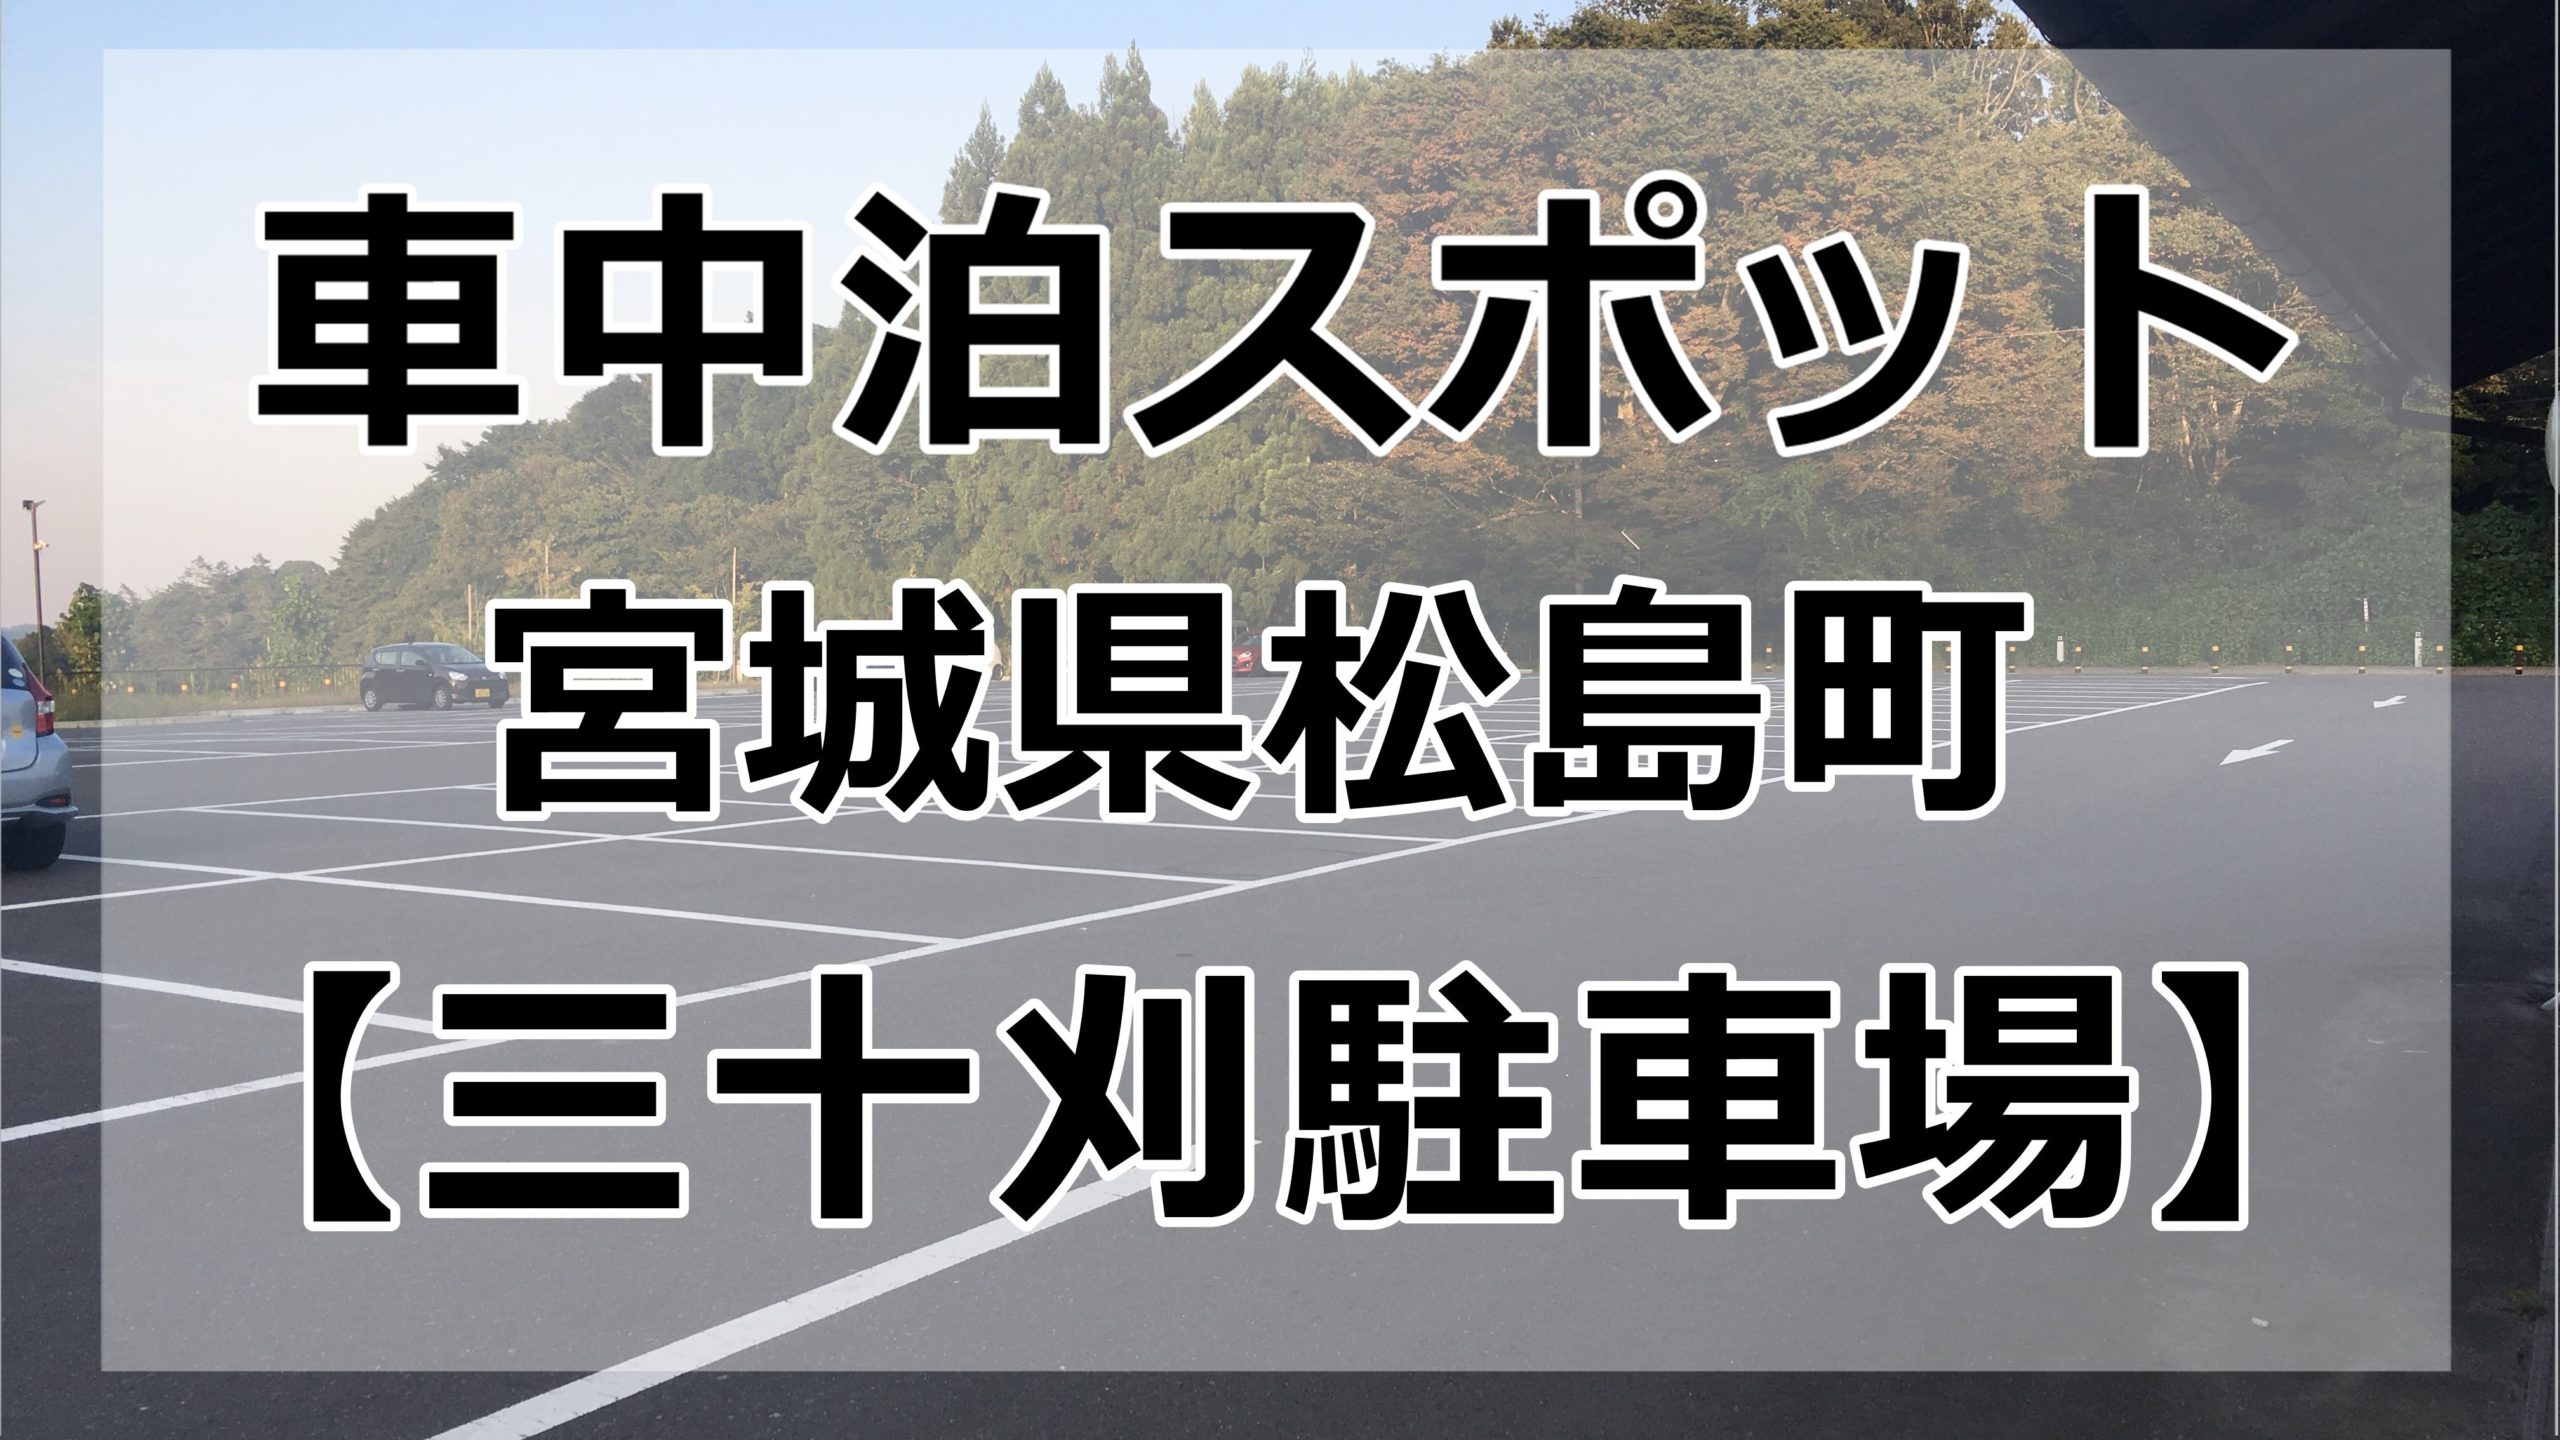 松島付近 車中泊する場所は 町営三十刈駐車場 です ブログ 車中泊女子 初心者向けバンライフブログ